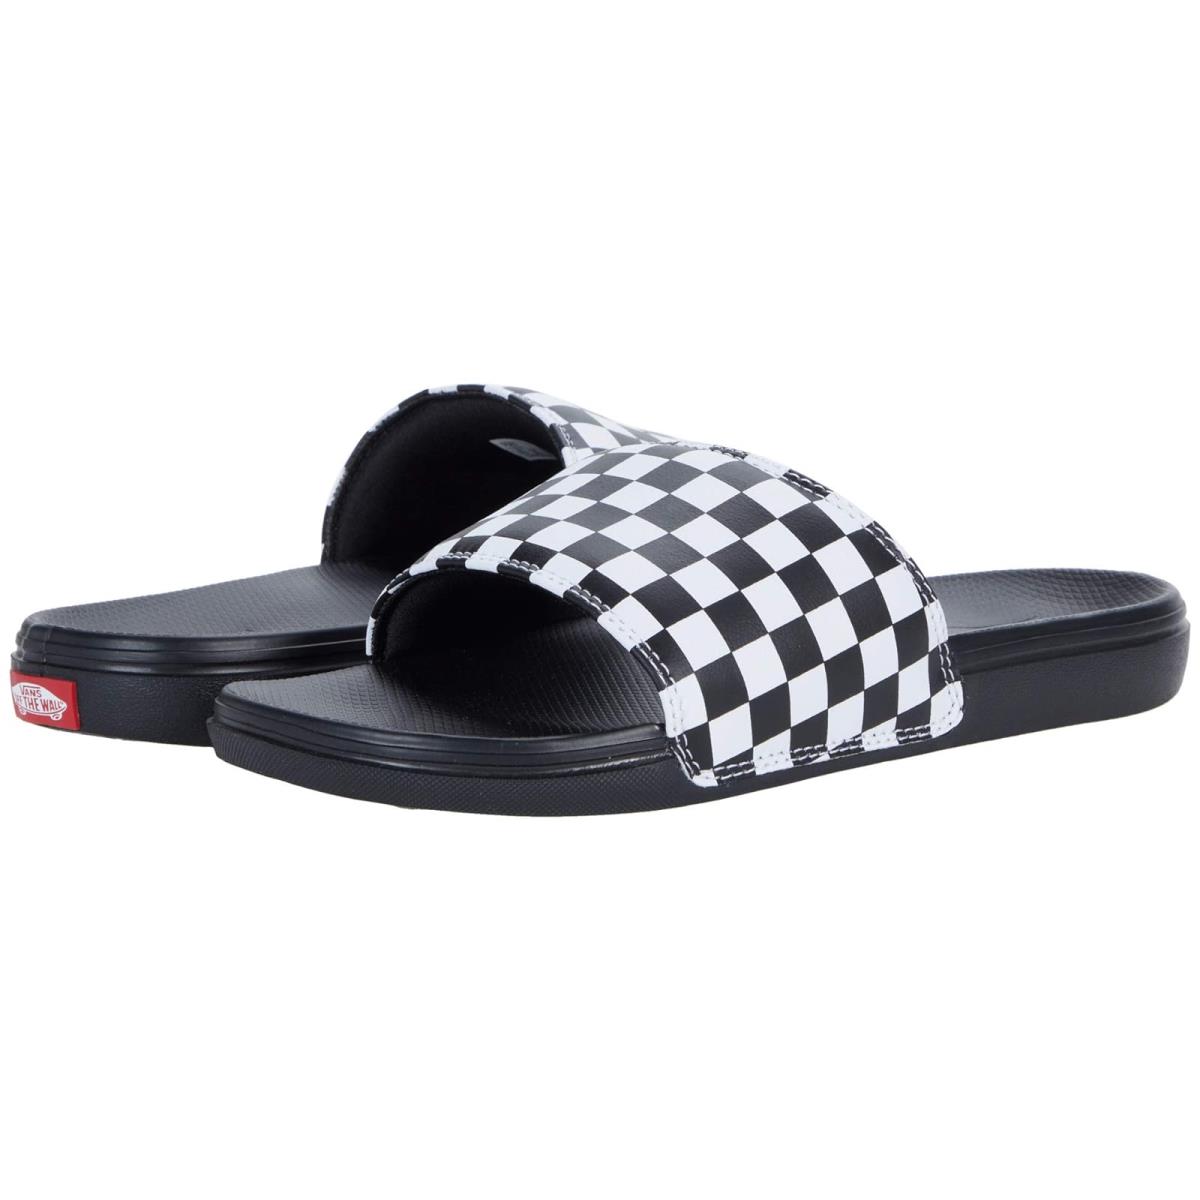 Unisex Sandals Vans La Costa Slide-on (Checkerboard) True White/Black